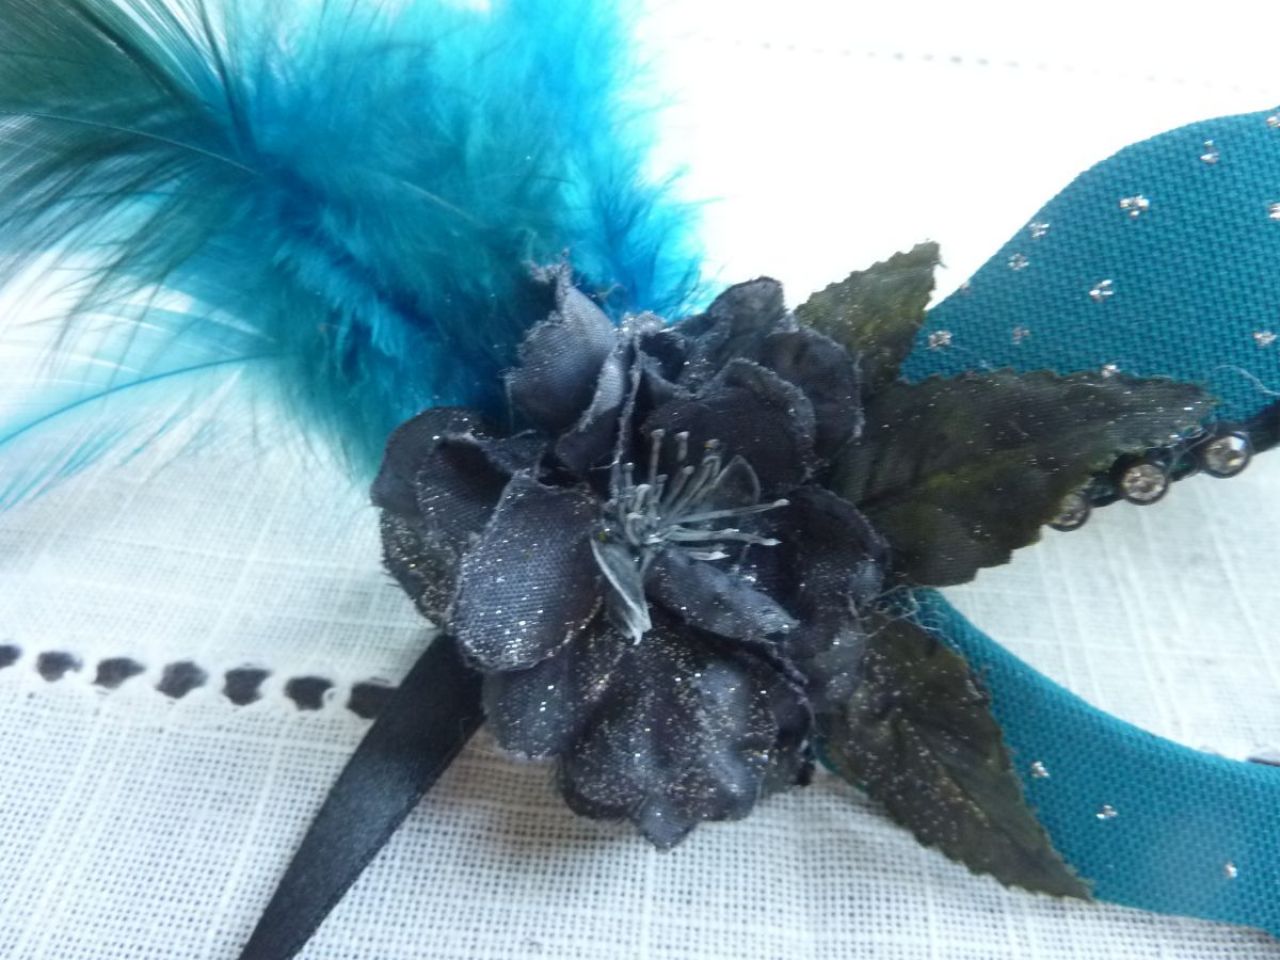 masque loup recouvert de tissu turquoise paillette, strass, rose noir, plumes